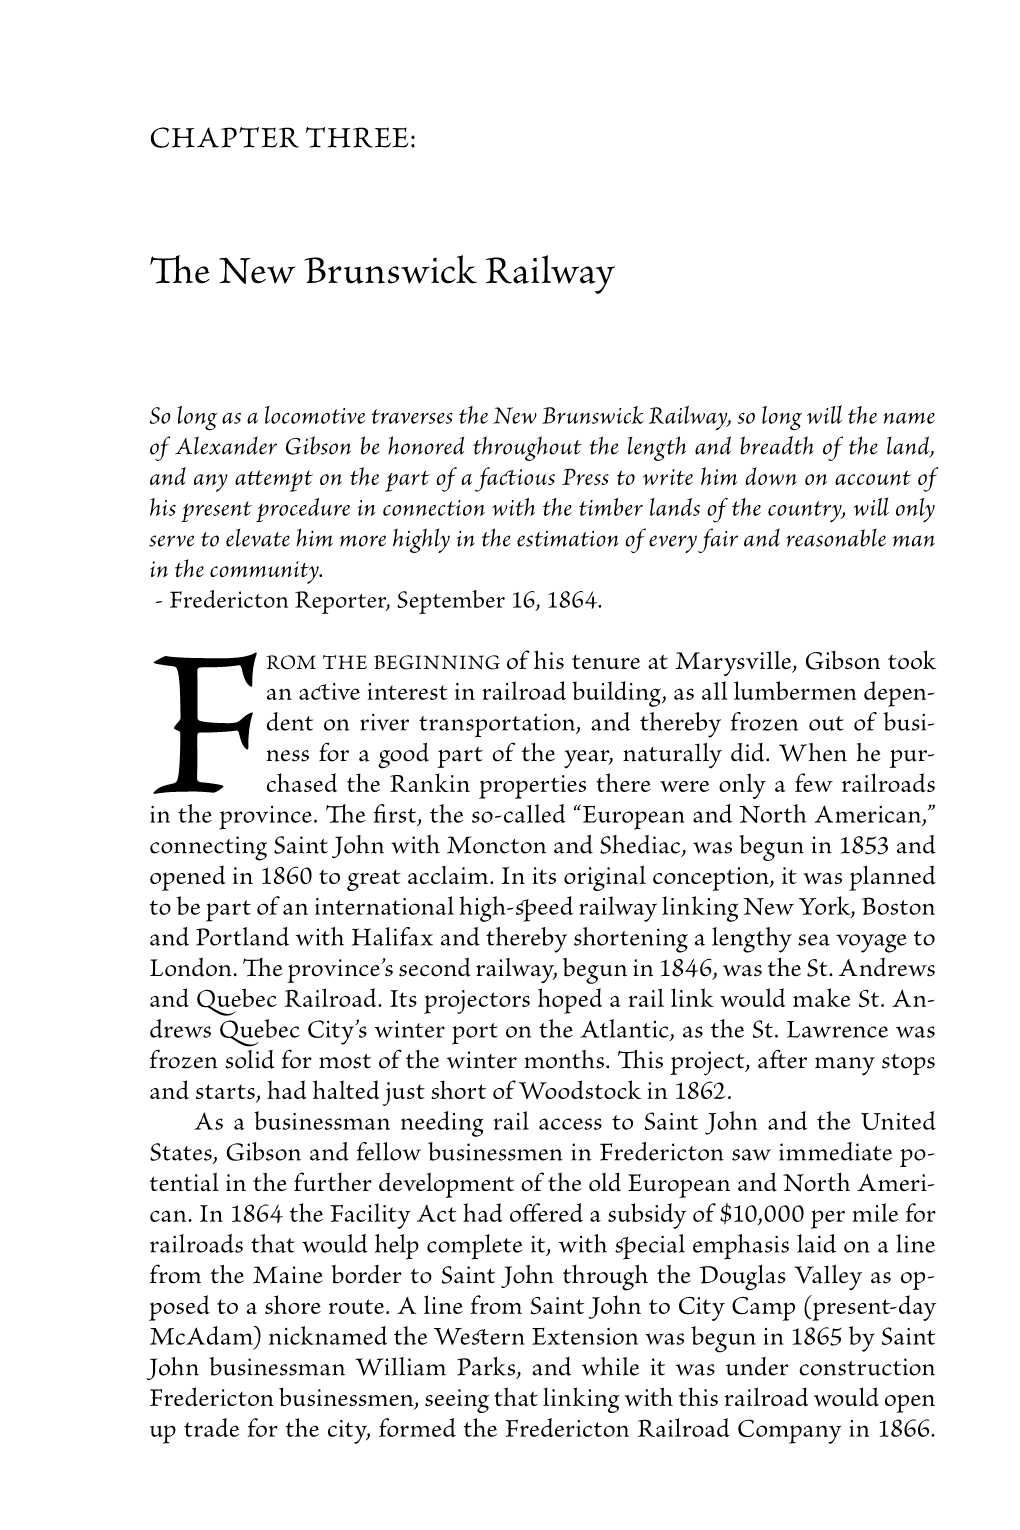 The New Brunswick Railway